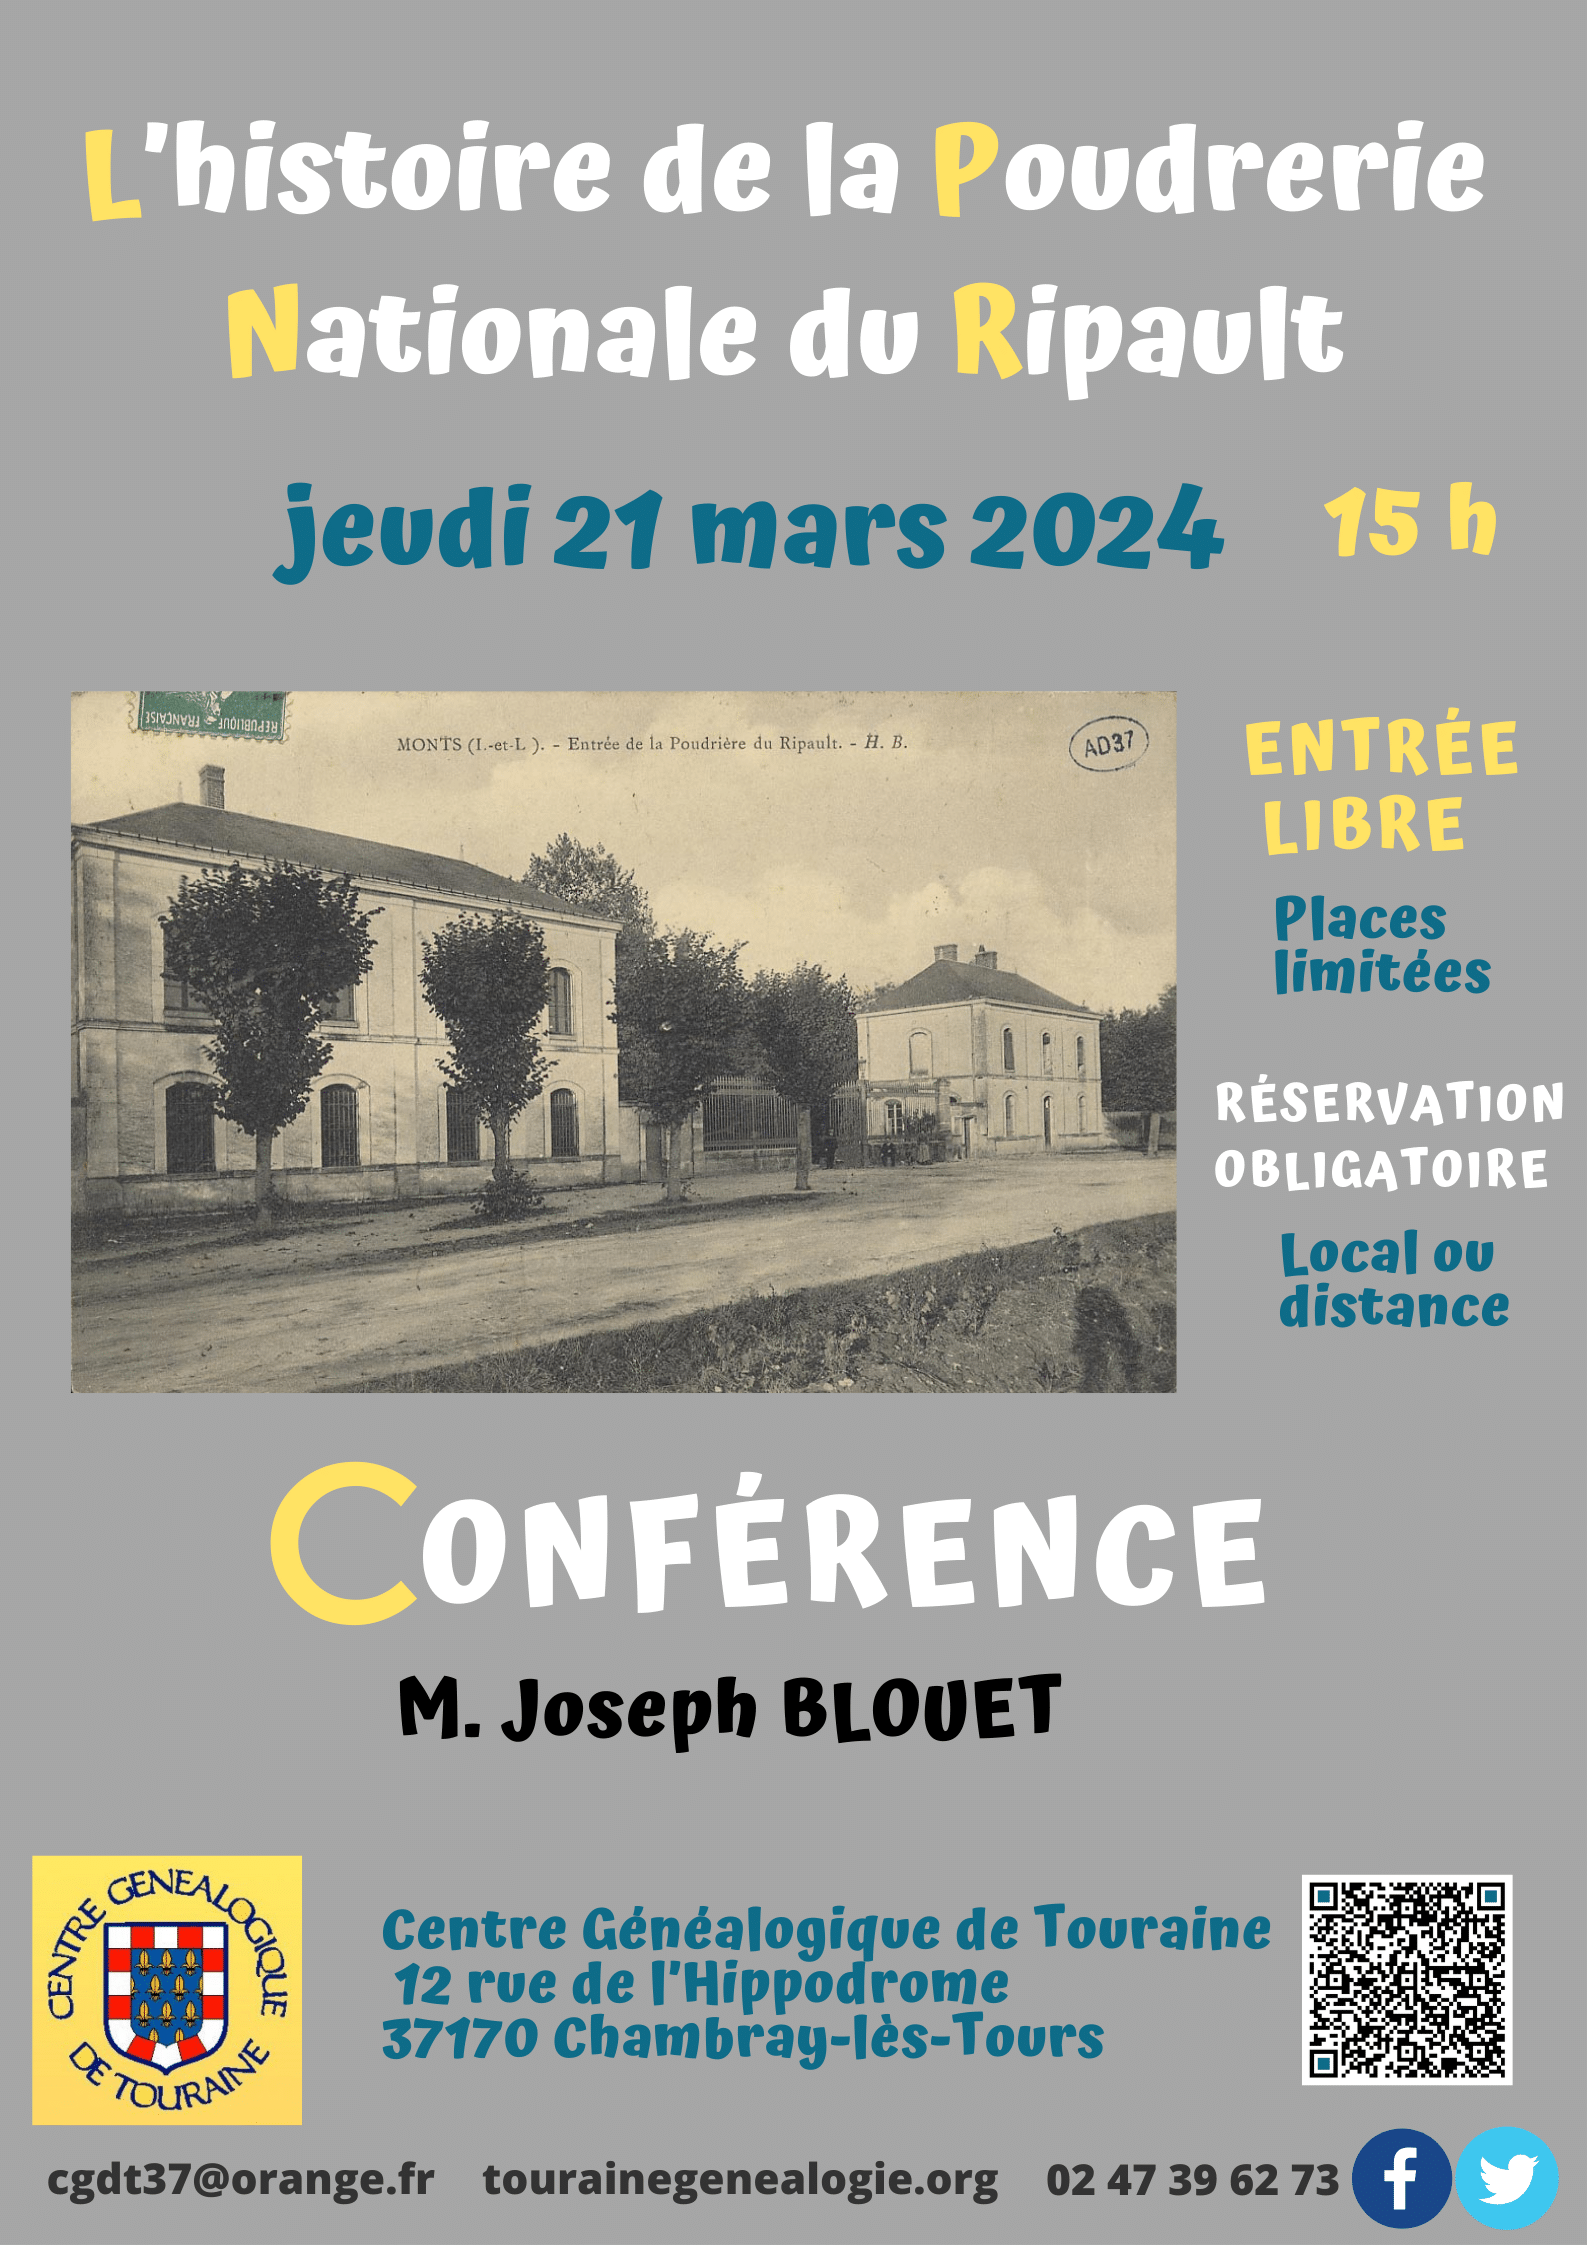 21 mars 2024 15 h - Les jeudis du CGDT - "L'histoire de la Poudrerie du Ripault" conférence de Joseph Blouet au local et à distance